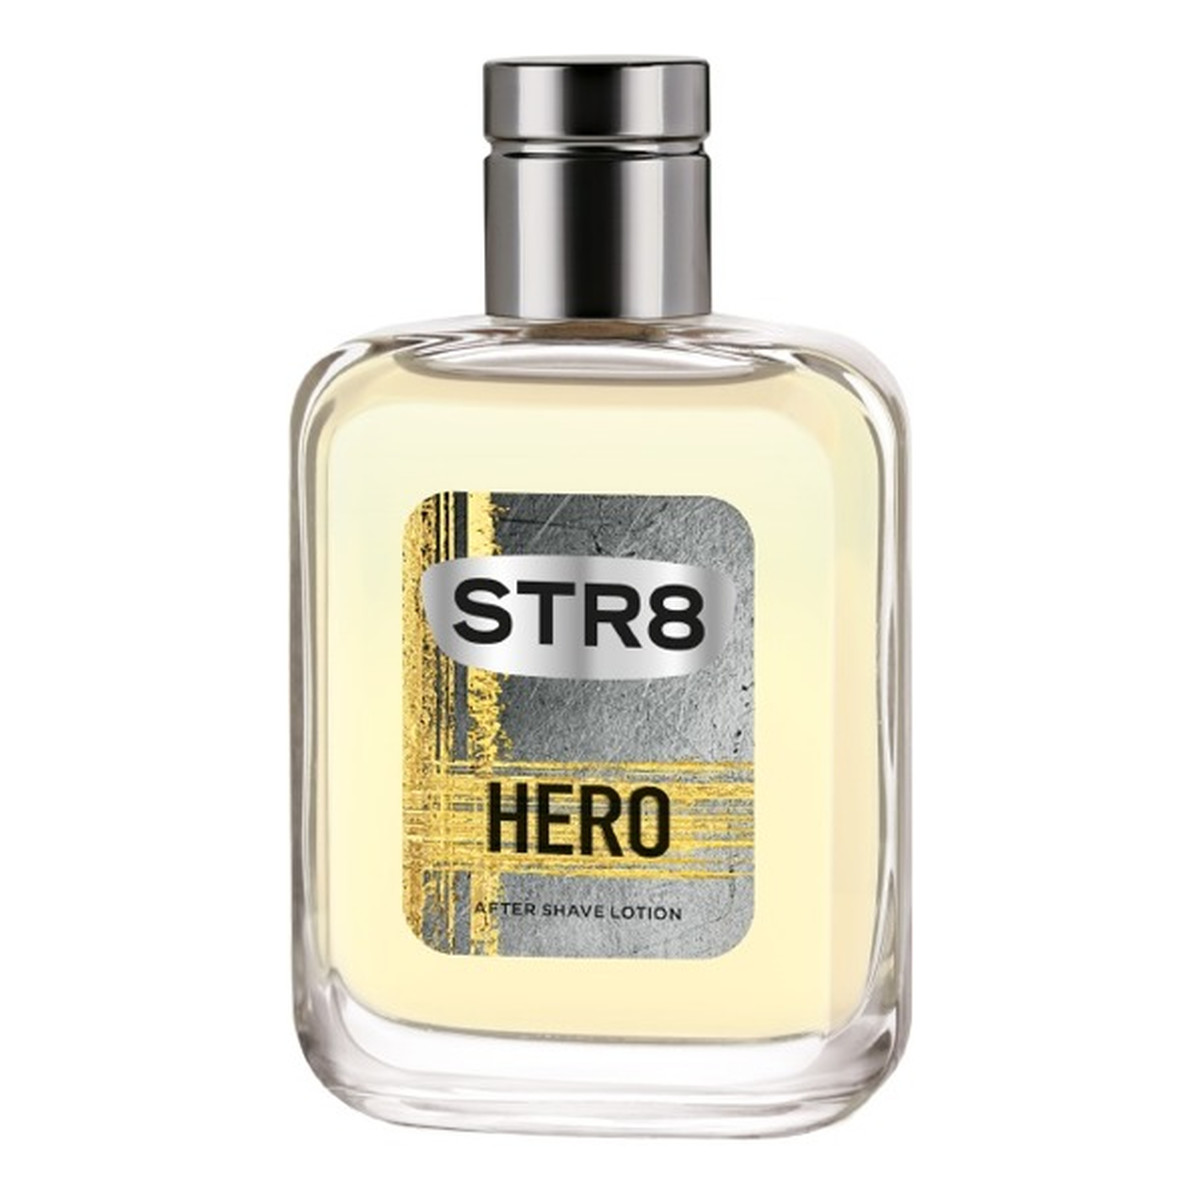 STR8 Hero Płyn po goleniu 100ml